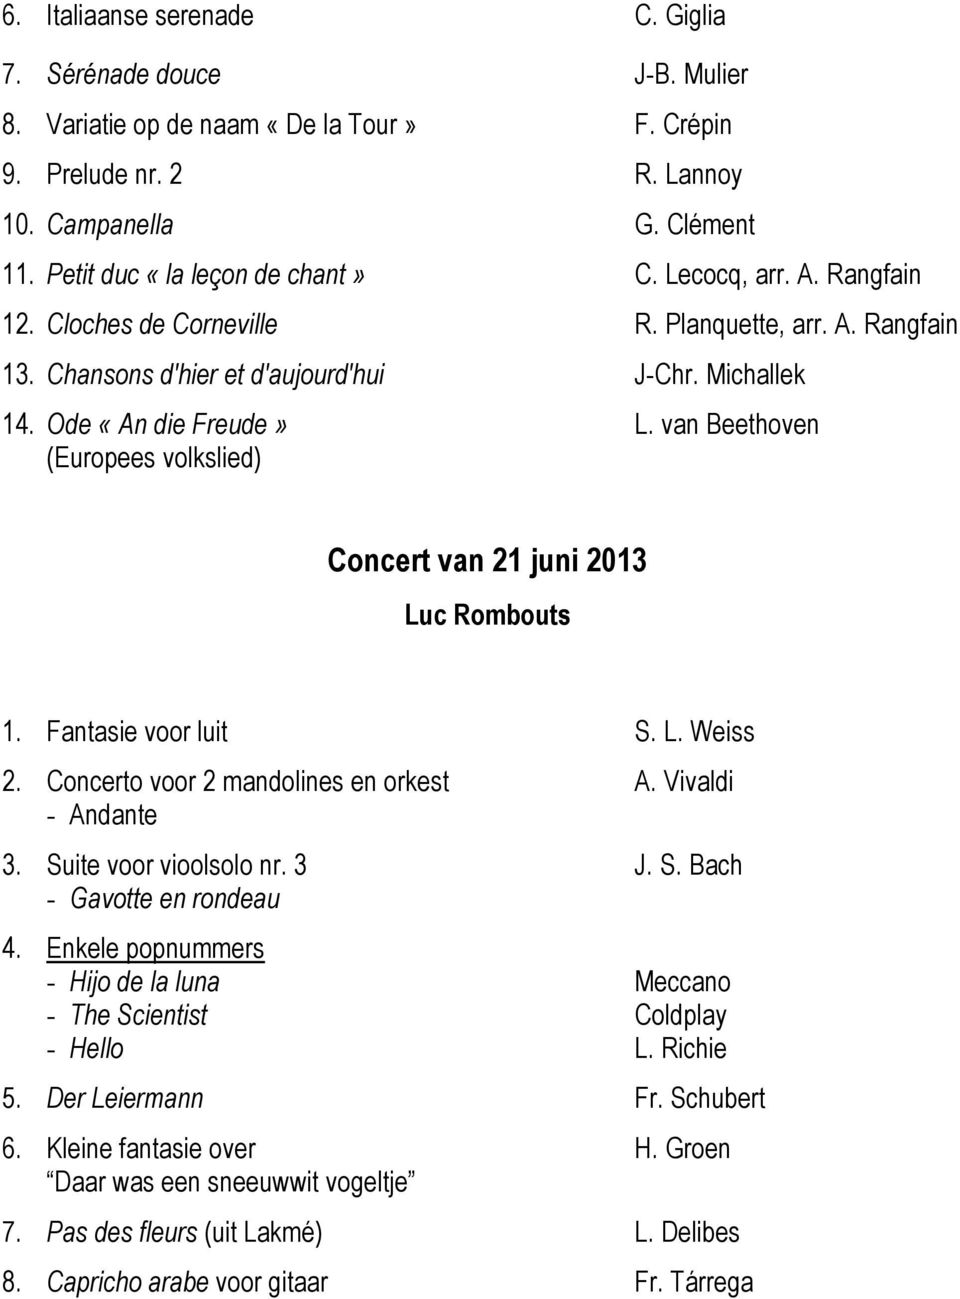 van Beethoven (Europees volkslied) Concert van 21 juni 2013 Luc Rombouts 1. Fantasie voor luit S. L. Weiss 2. Concerto voor 2 mandolines en orkest A. Vivaldi - Andante 3. Suite voor vioolsolo nr. 3 J.